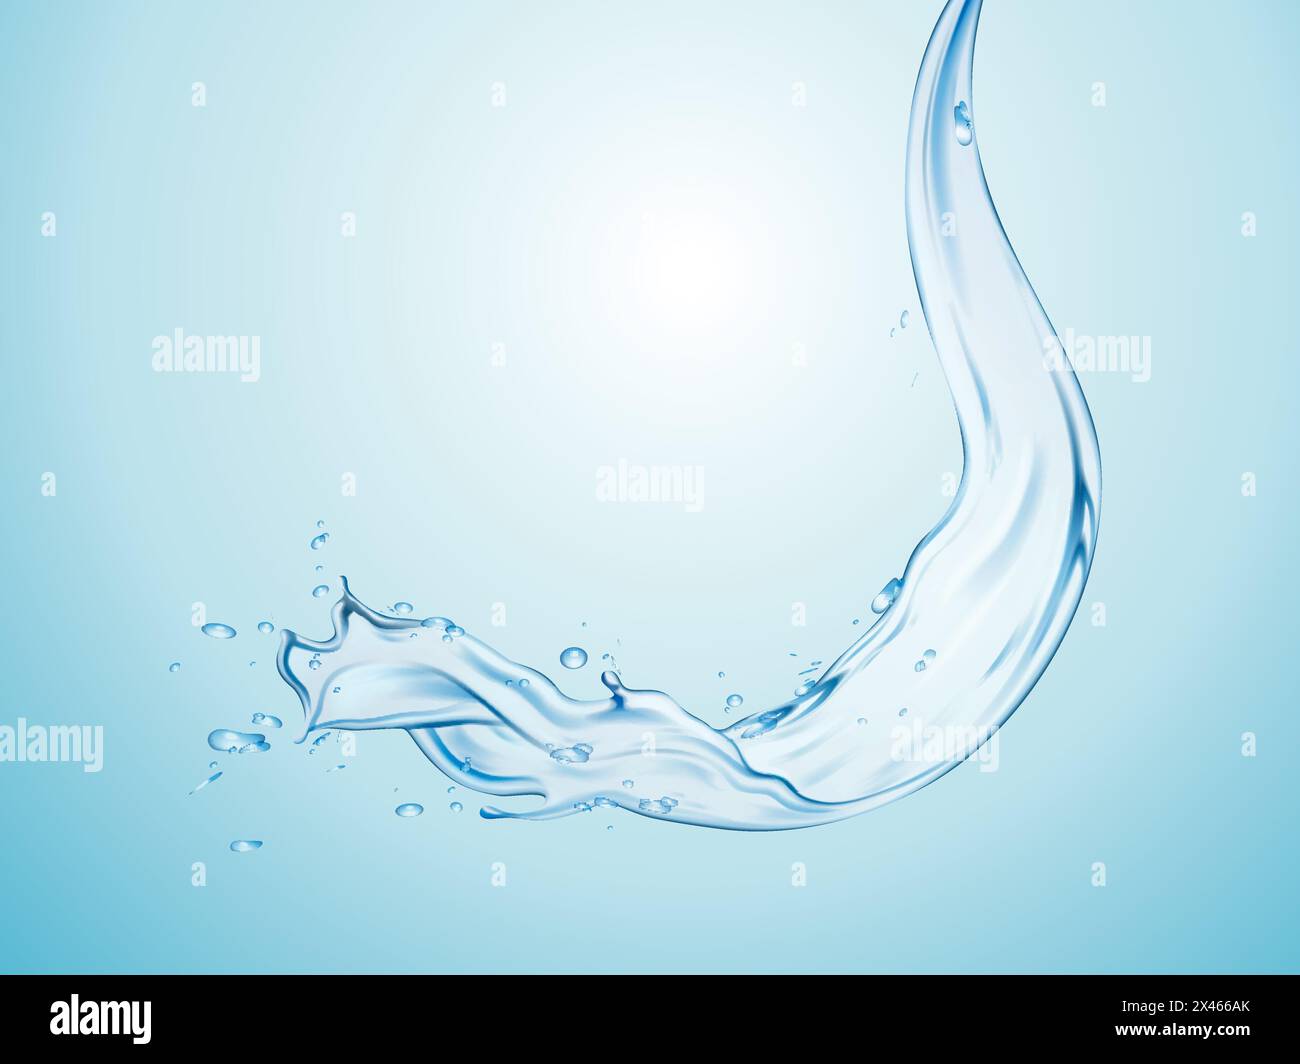 Klares Wasser in Strömen isoliert auf hellblauem Hintergrund, 3 Abbildung d Stock Vektor